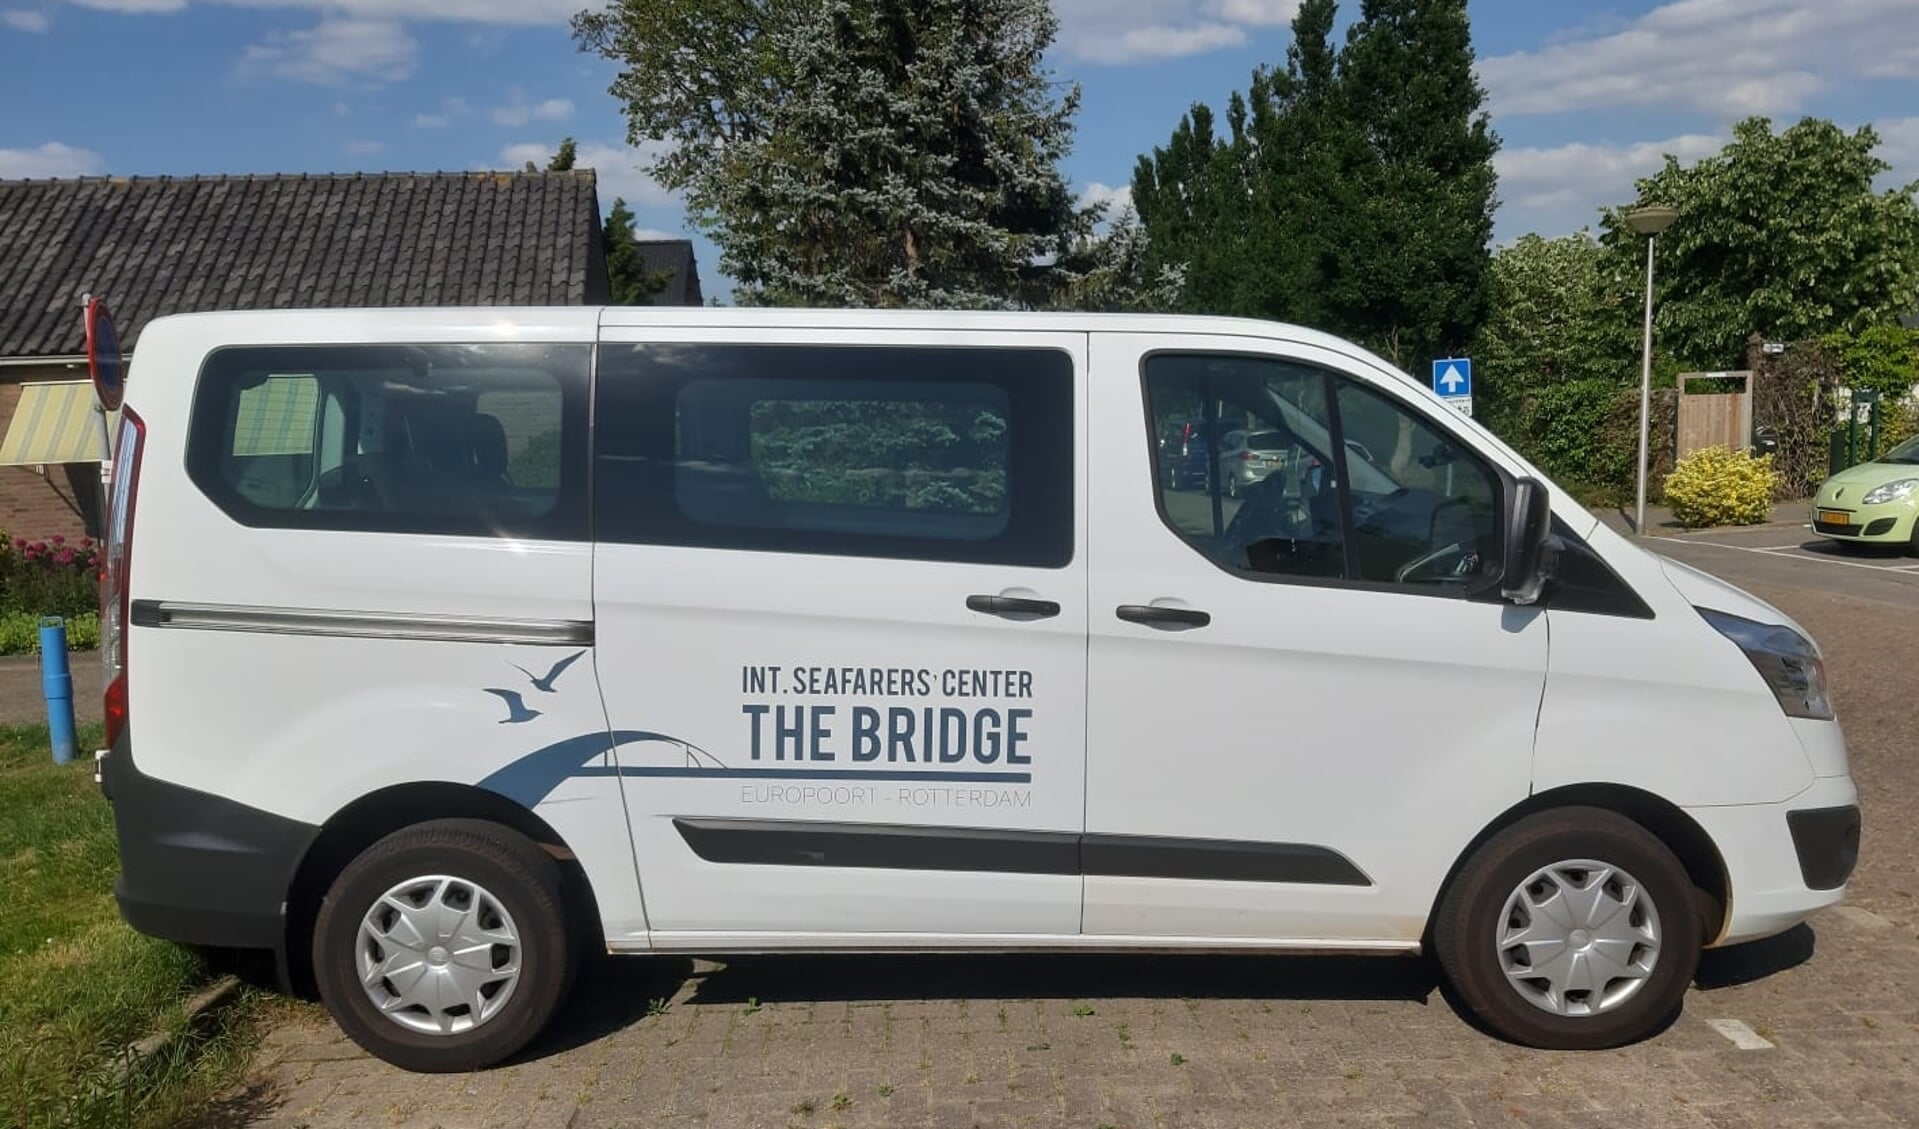 De bus van The Bridge is al helemaal ingericht volgens de richtlijnen van het RIVM